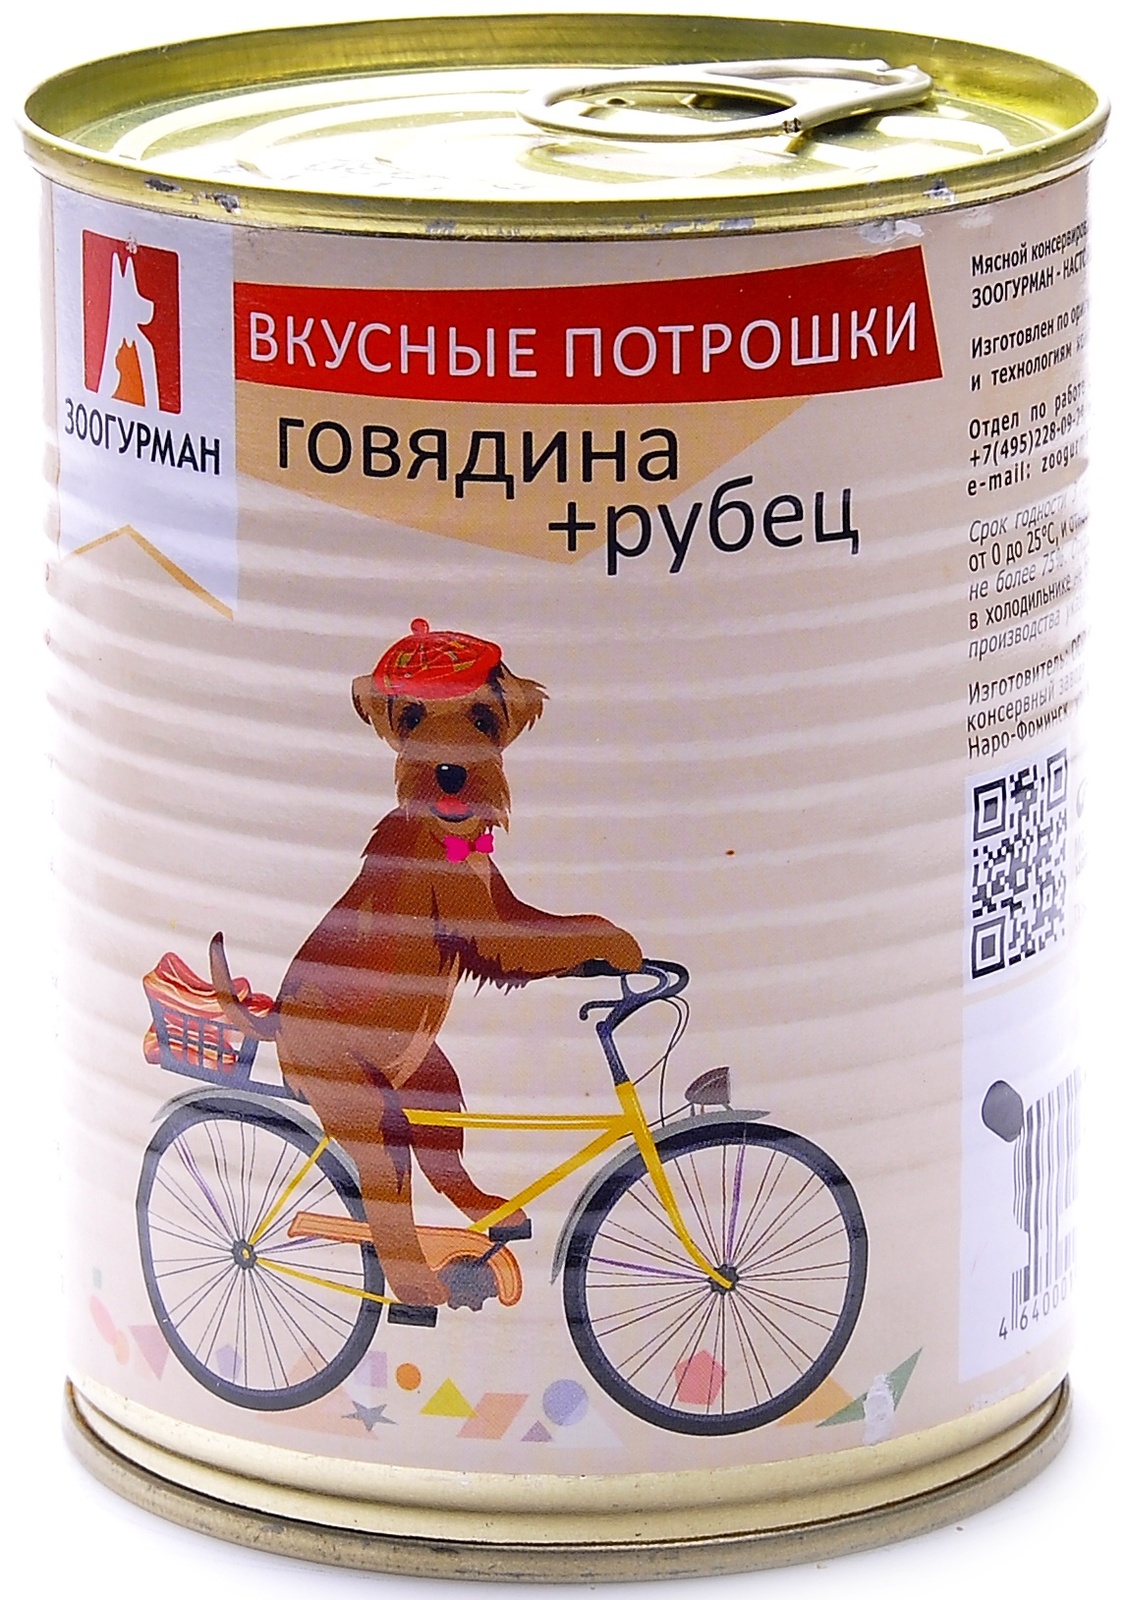 Зоогурман Зоогурман консервы для собак Мясное ассорти говядина + рубец (350 г)